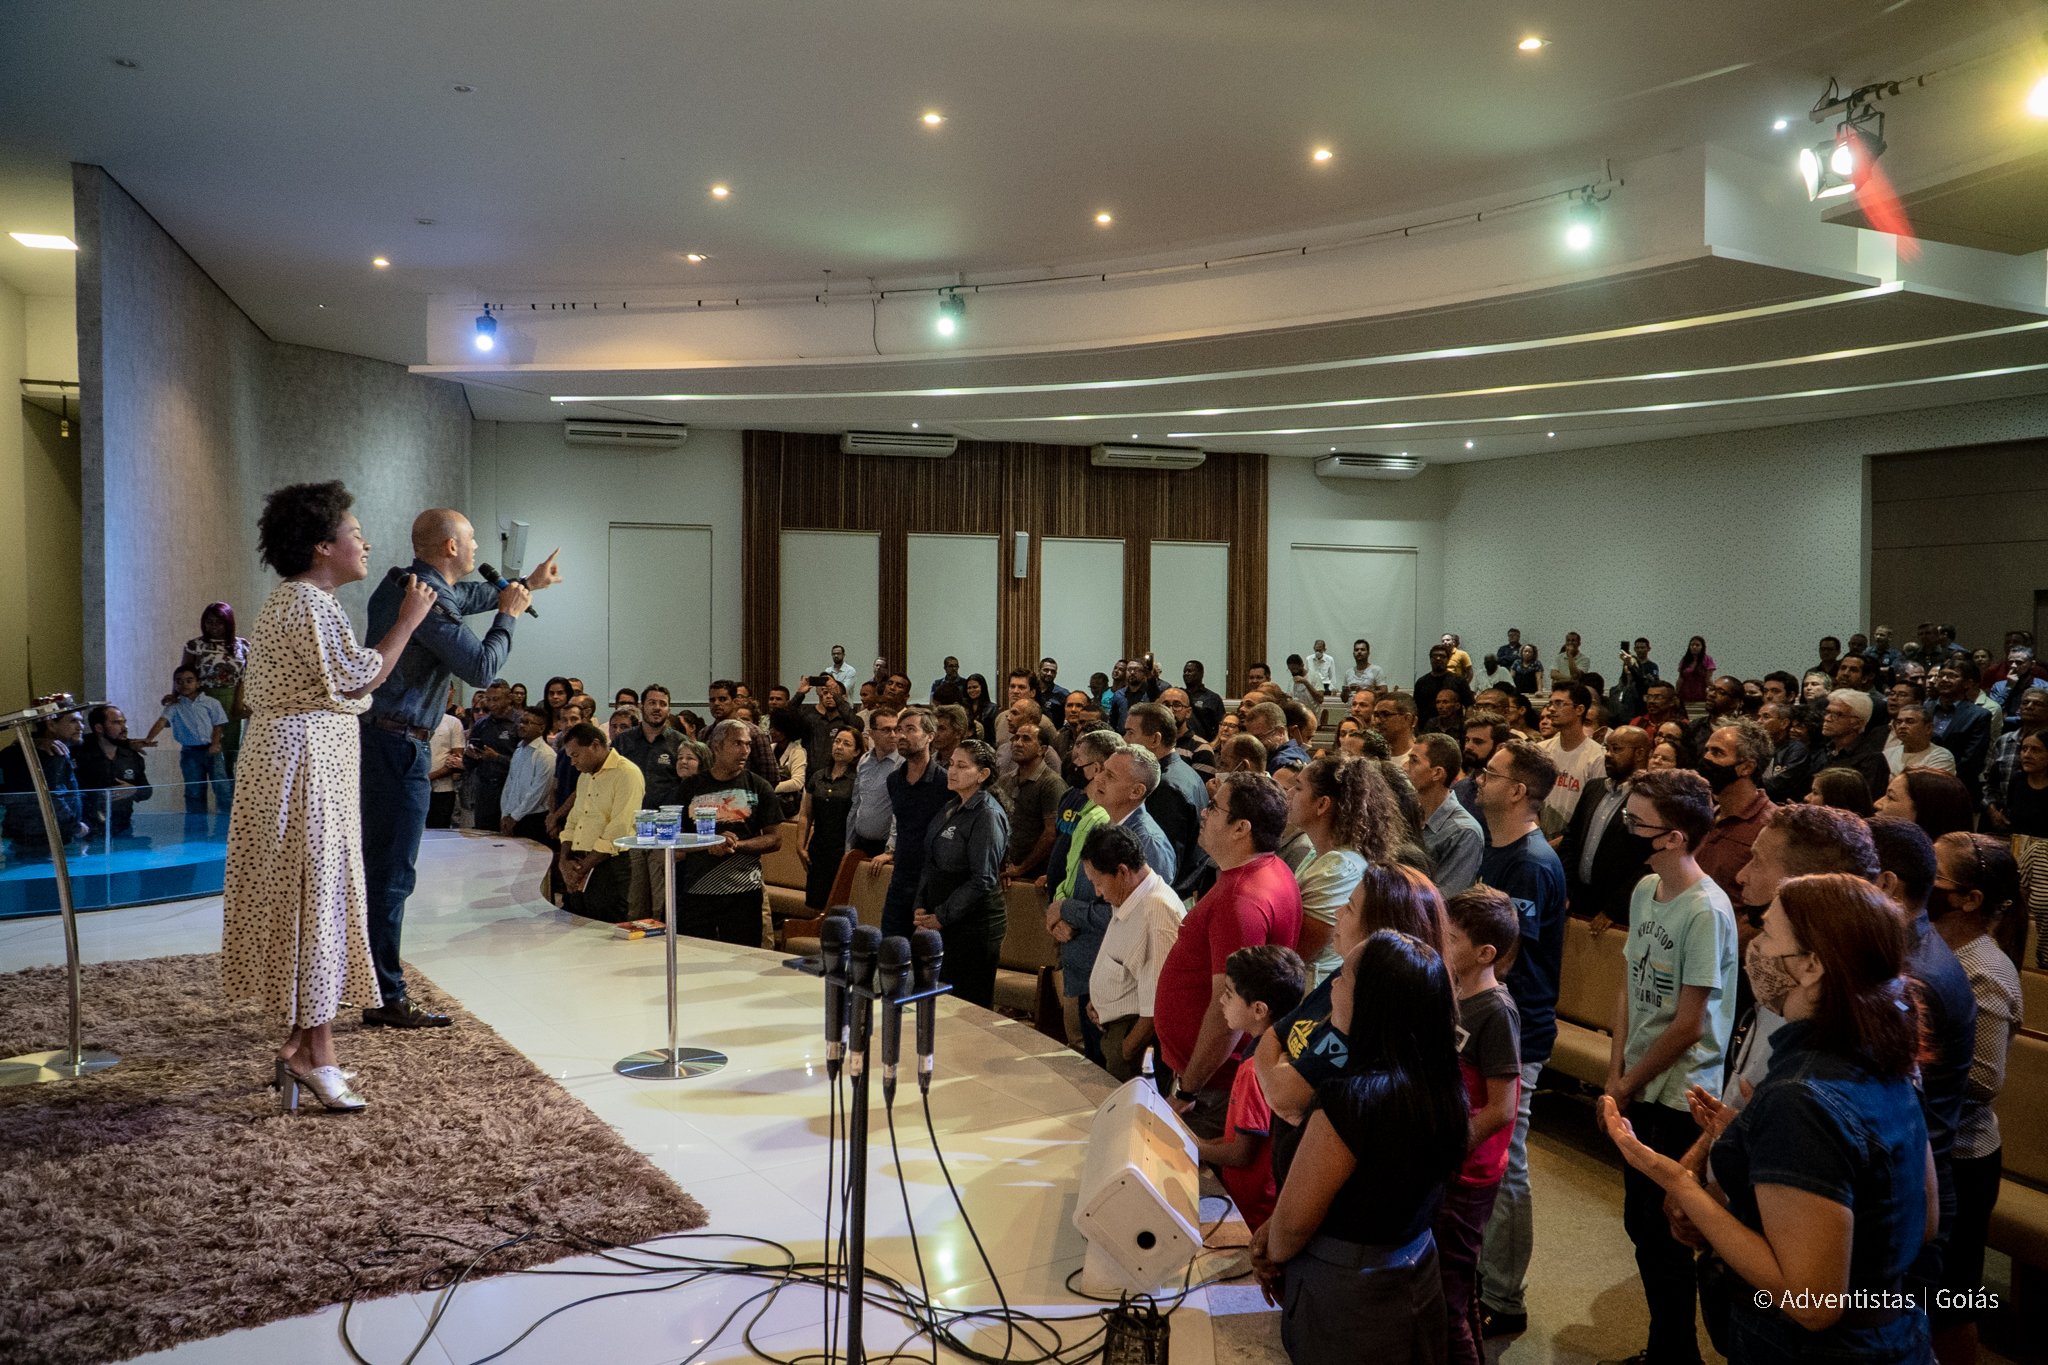 Adventistas em Goiás participam de Encontro de Mordomia Cristã￼